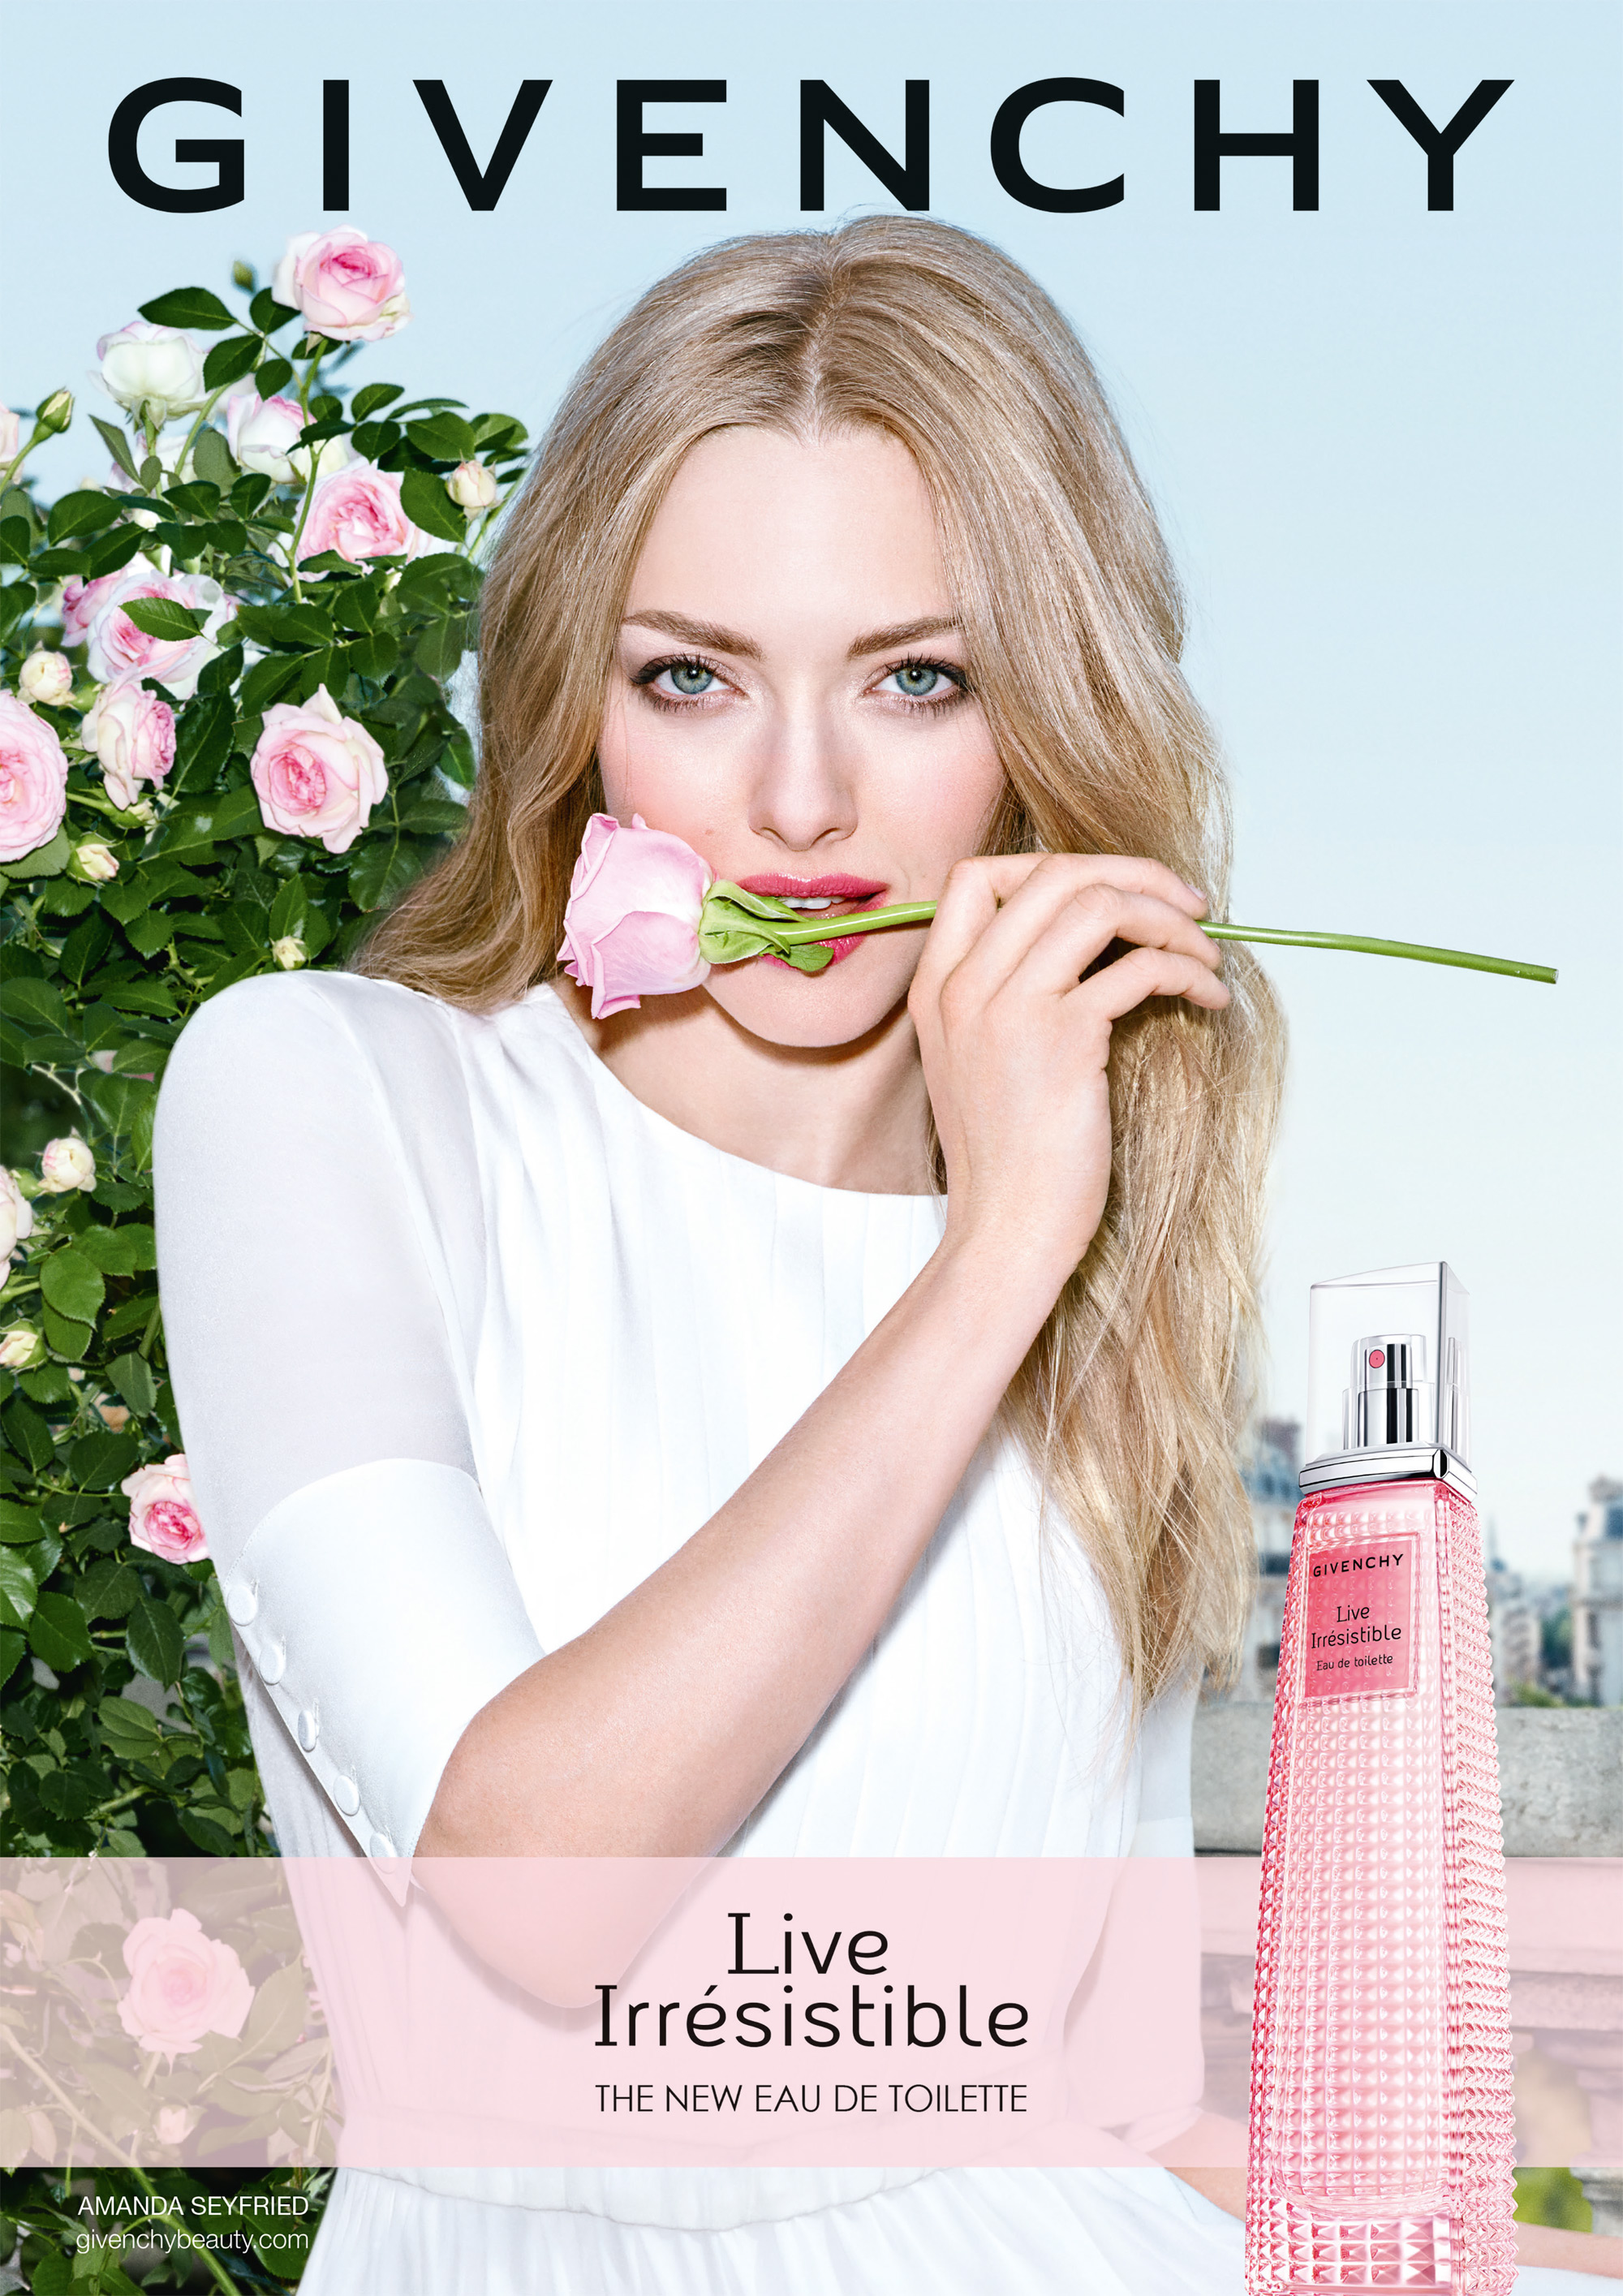 Live Irrésistible Eau de Toilette Givenchy perfume - a fragrance for